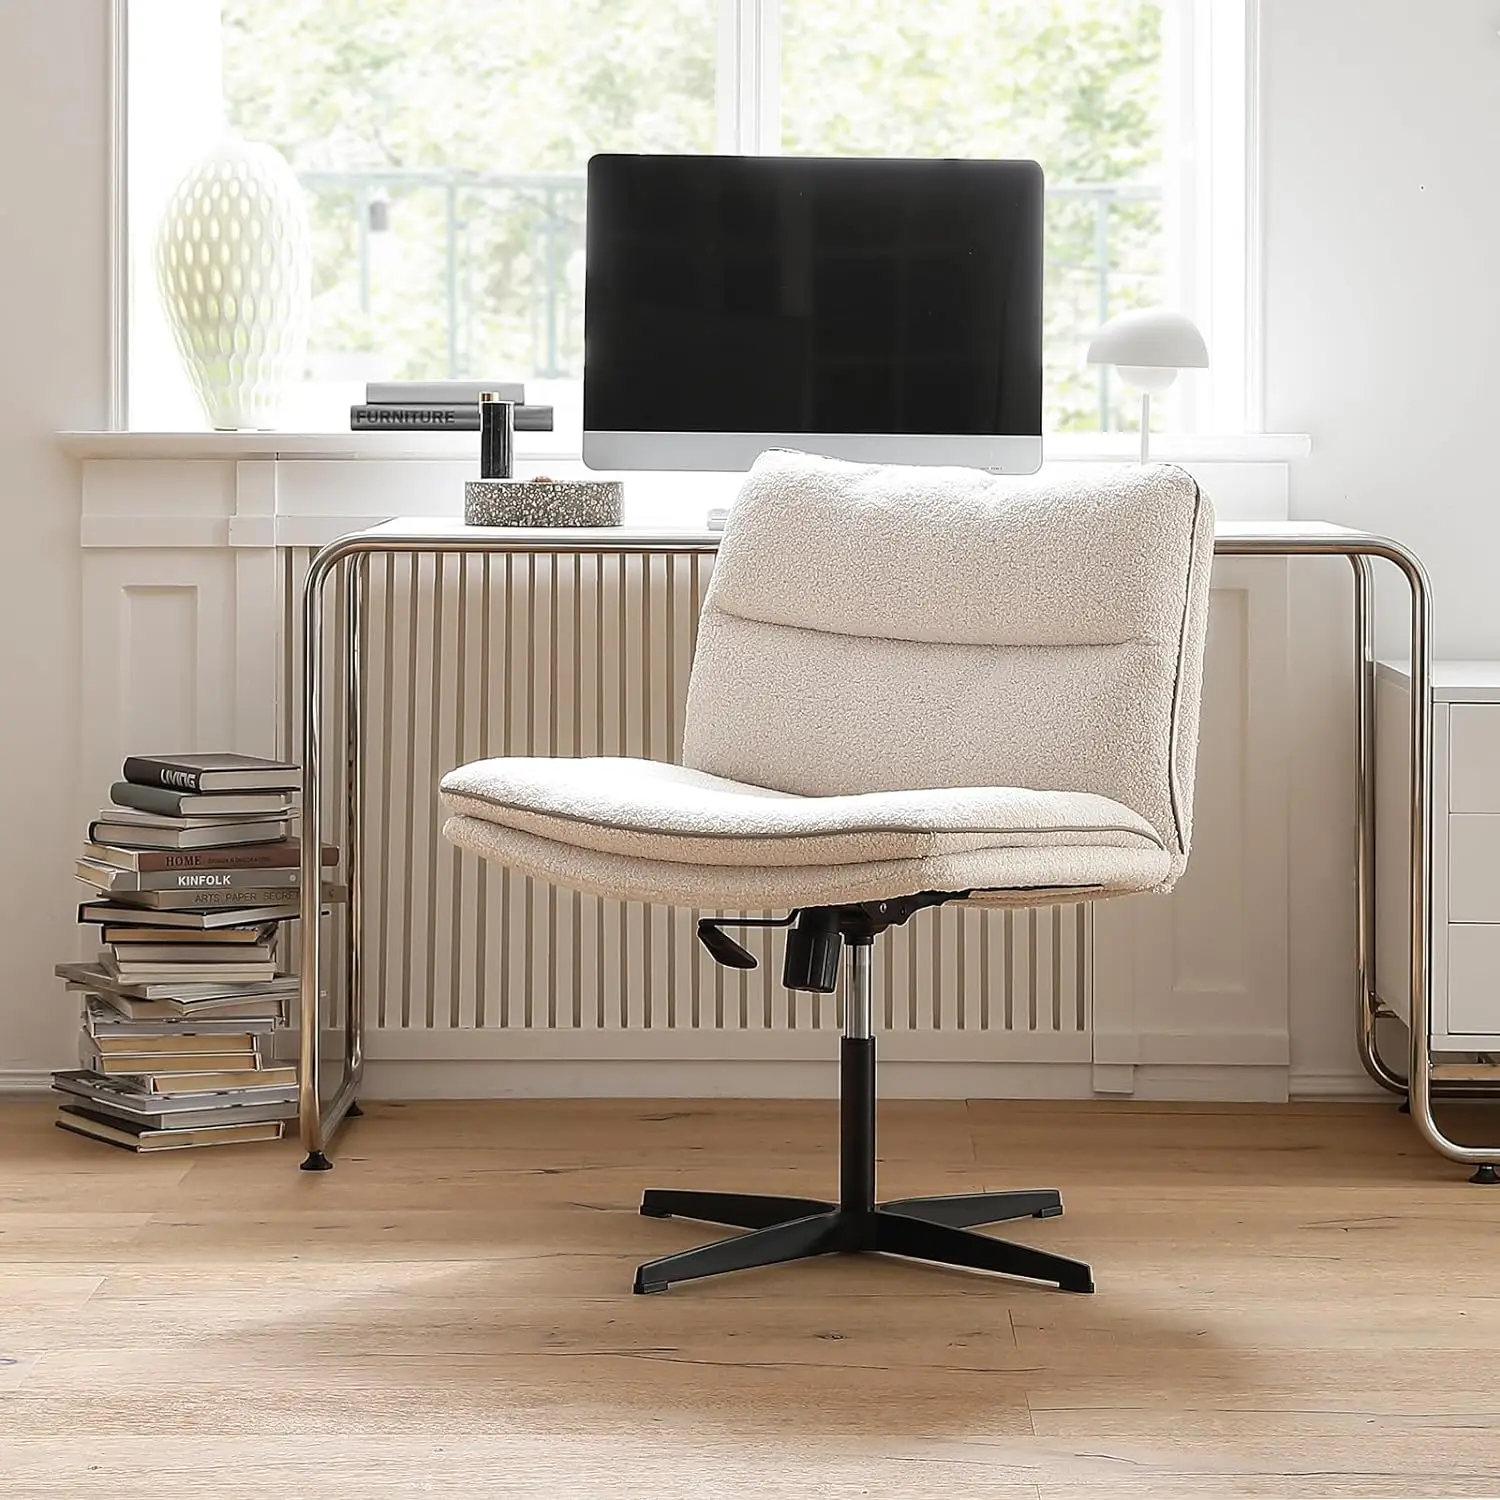 

Эргономичный удобный регулируемый вращающийся меховой эргономичный офисный стул без колес со средней спинкой из искусственного меха